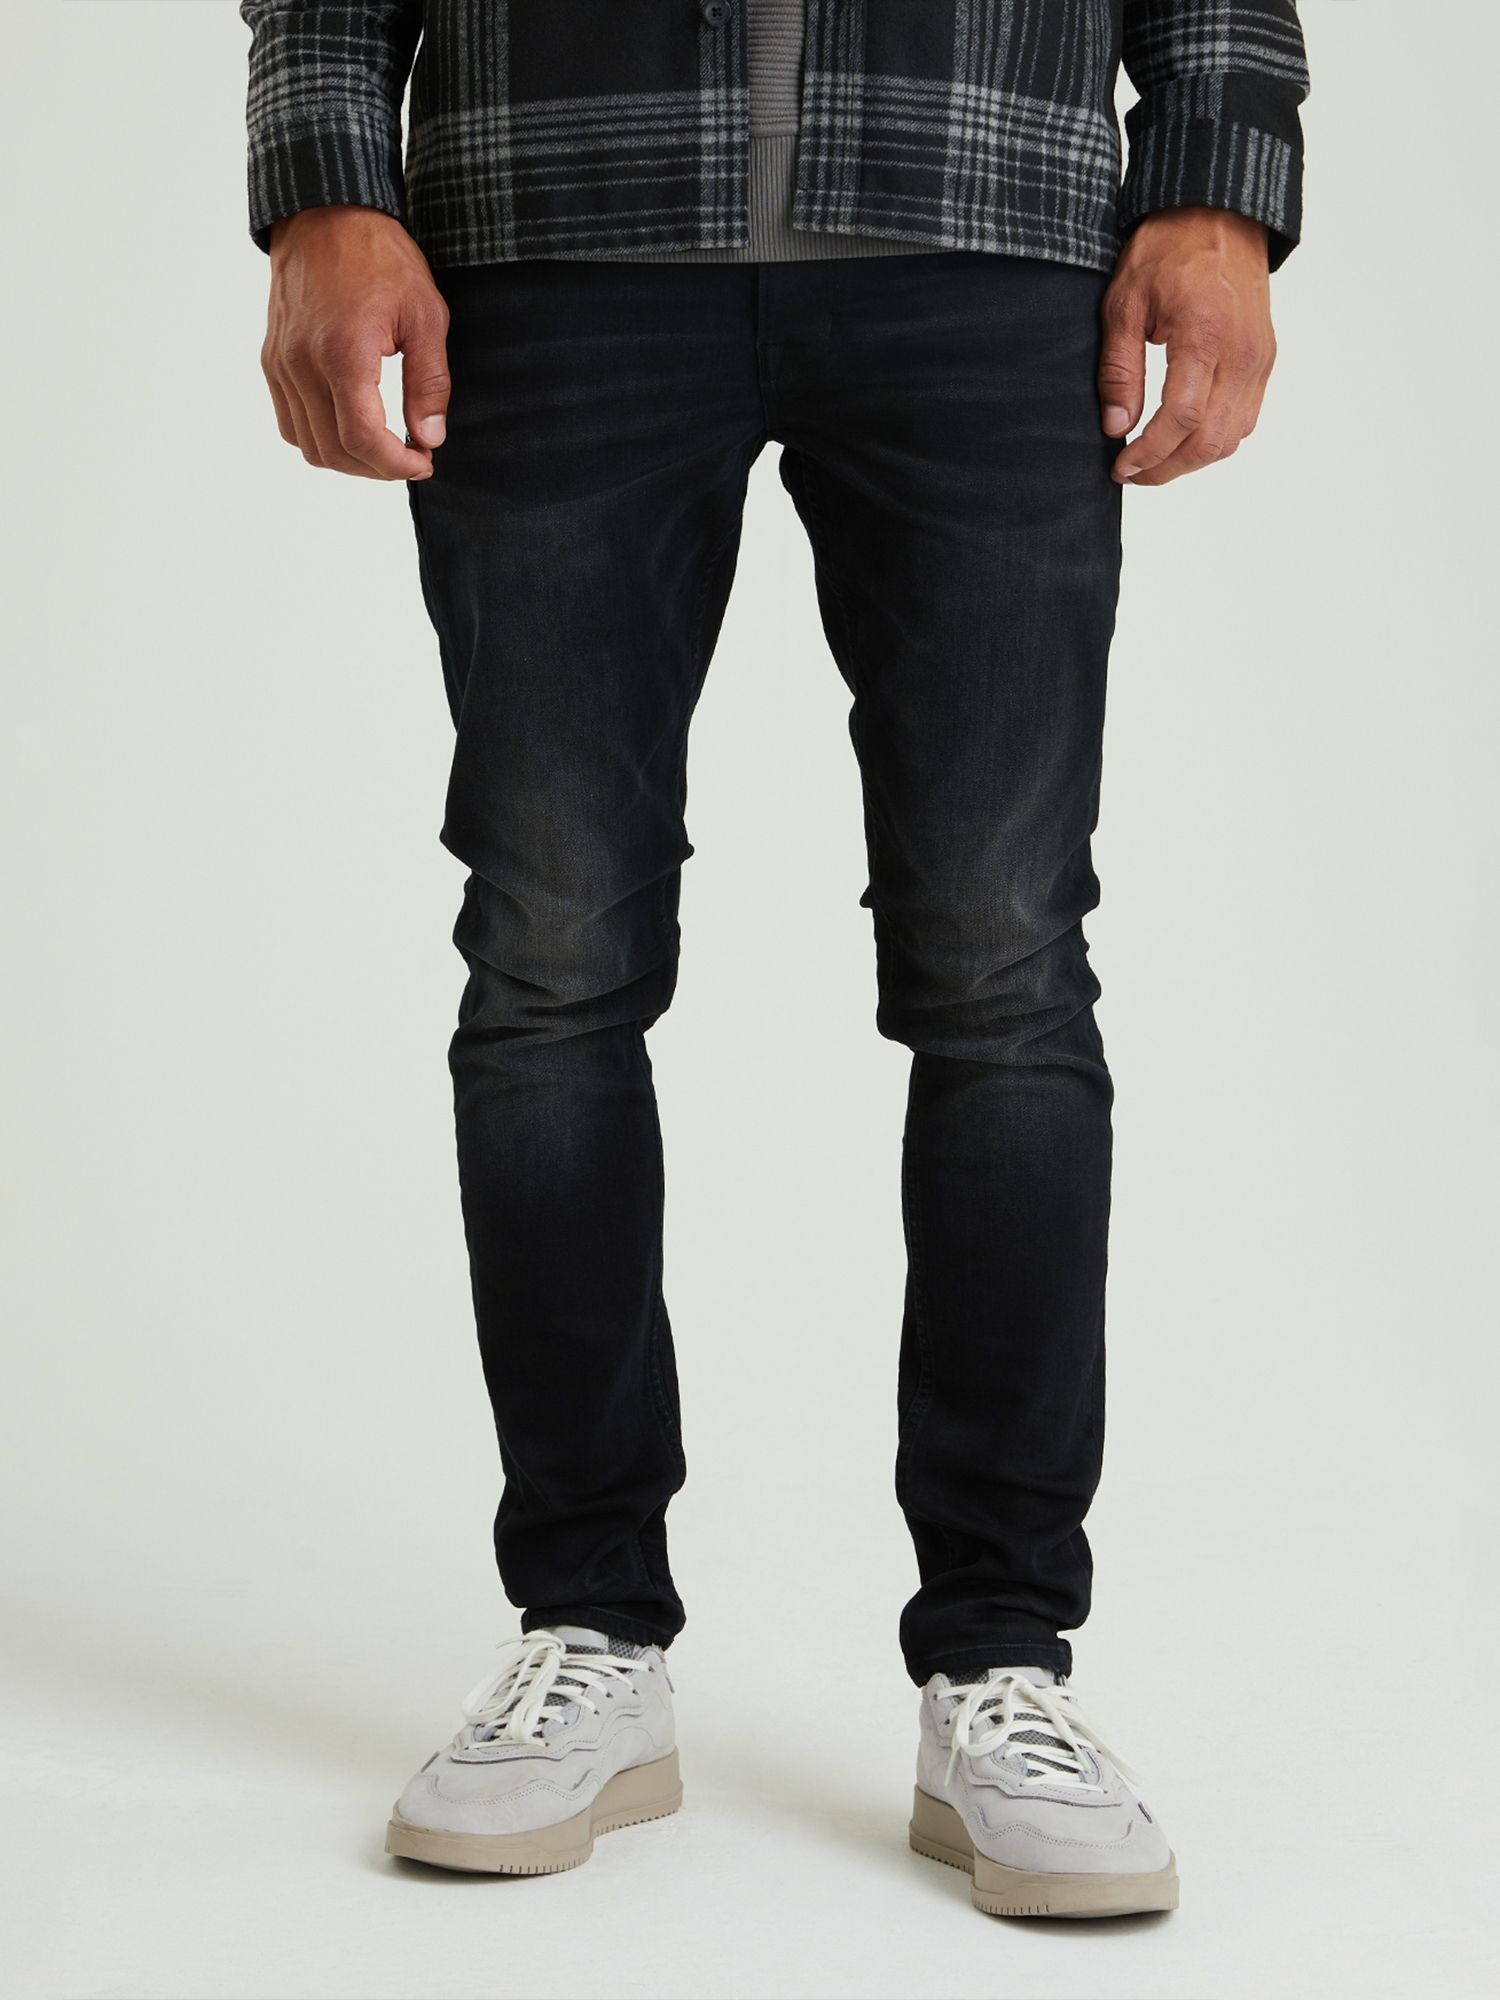 Super Flex Denim High Waist Bootcut Jeans - Calzedonia